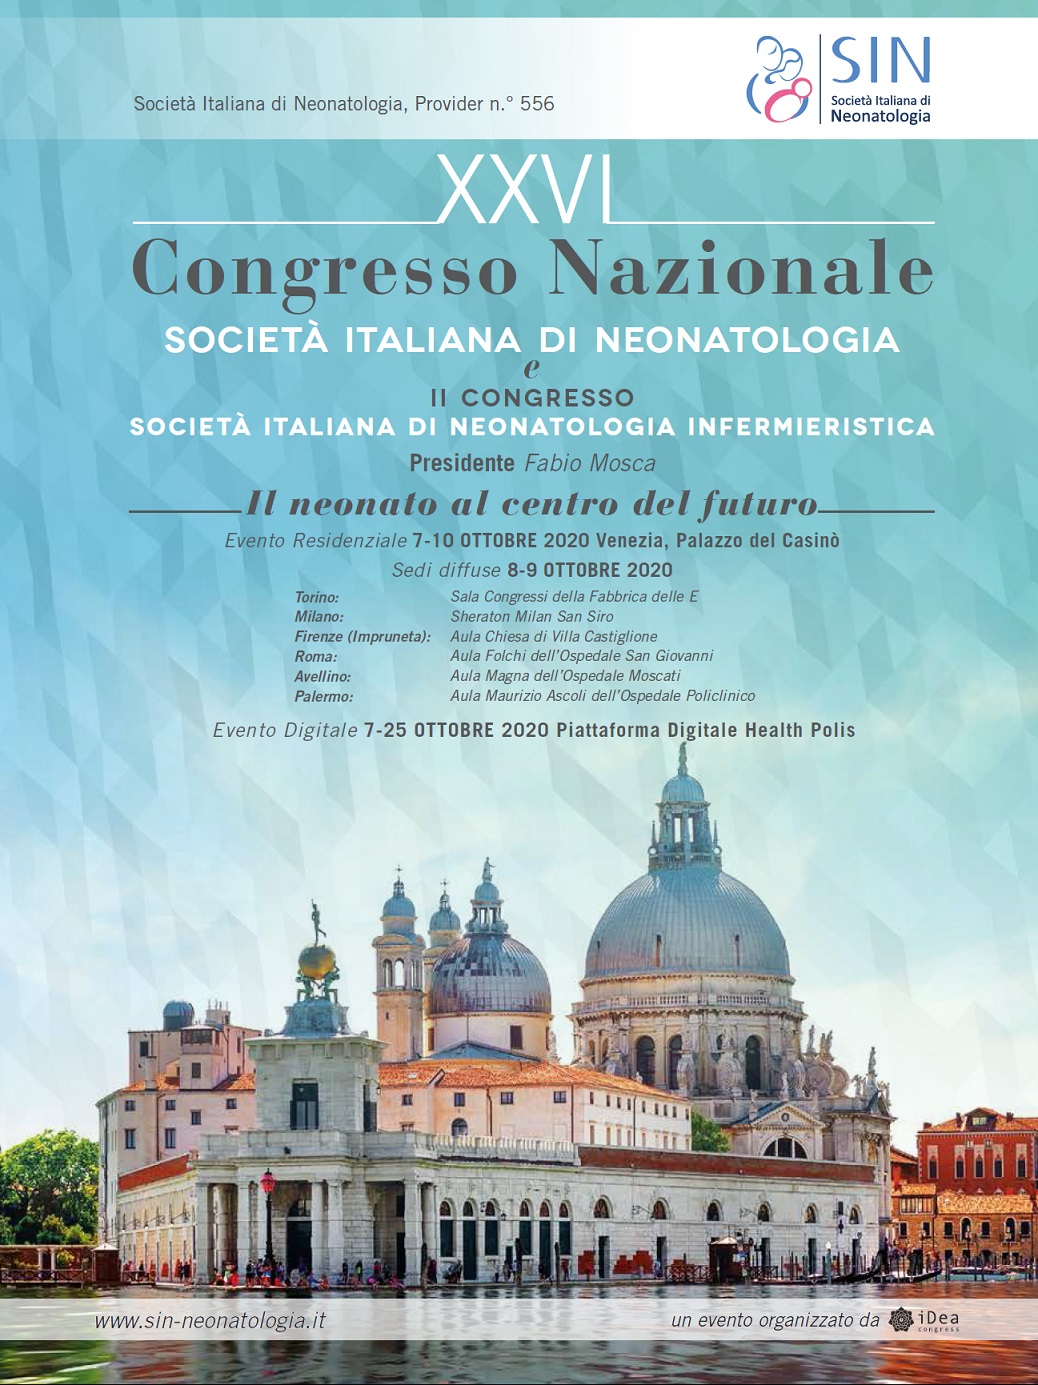 XXVI Congresso Nazionale della SIN Società Italiana di Neonatologia